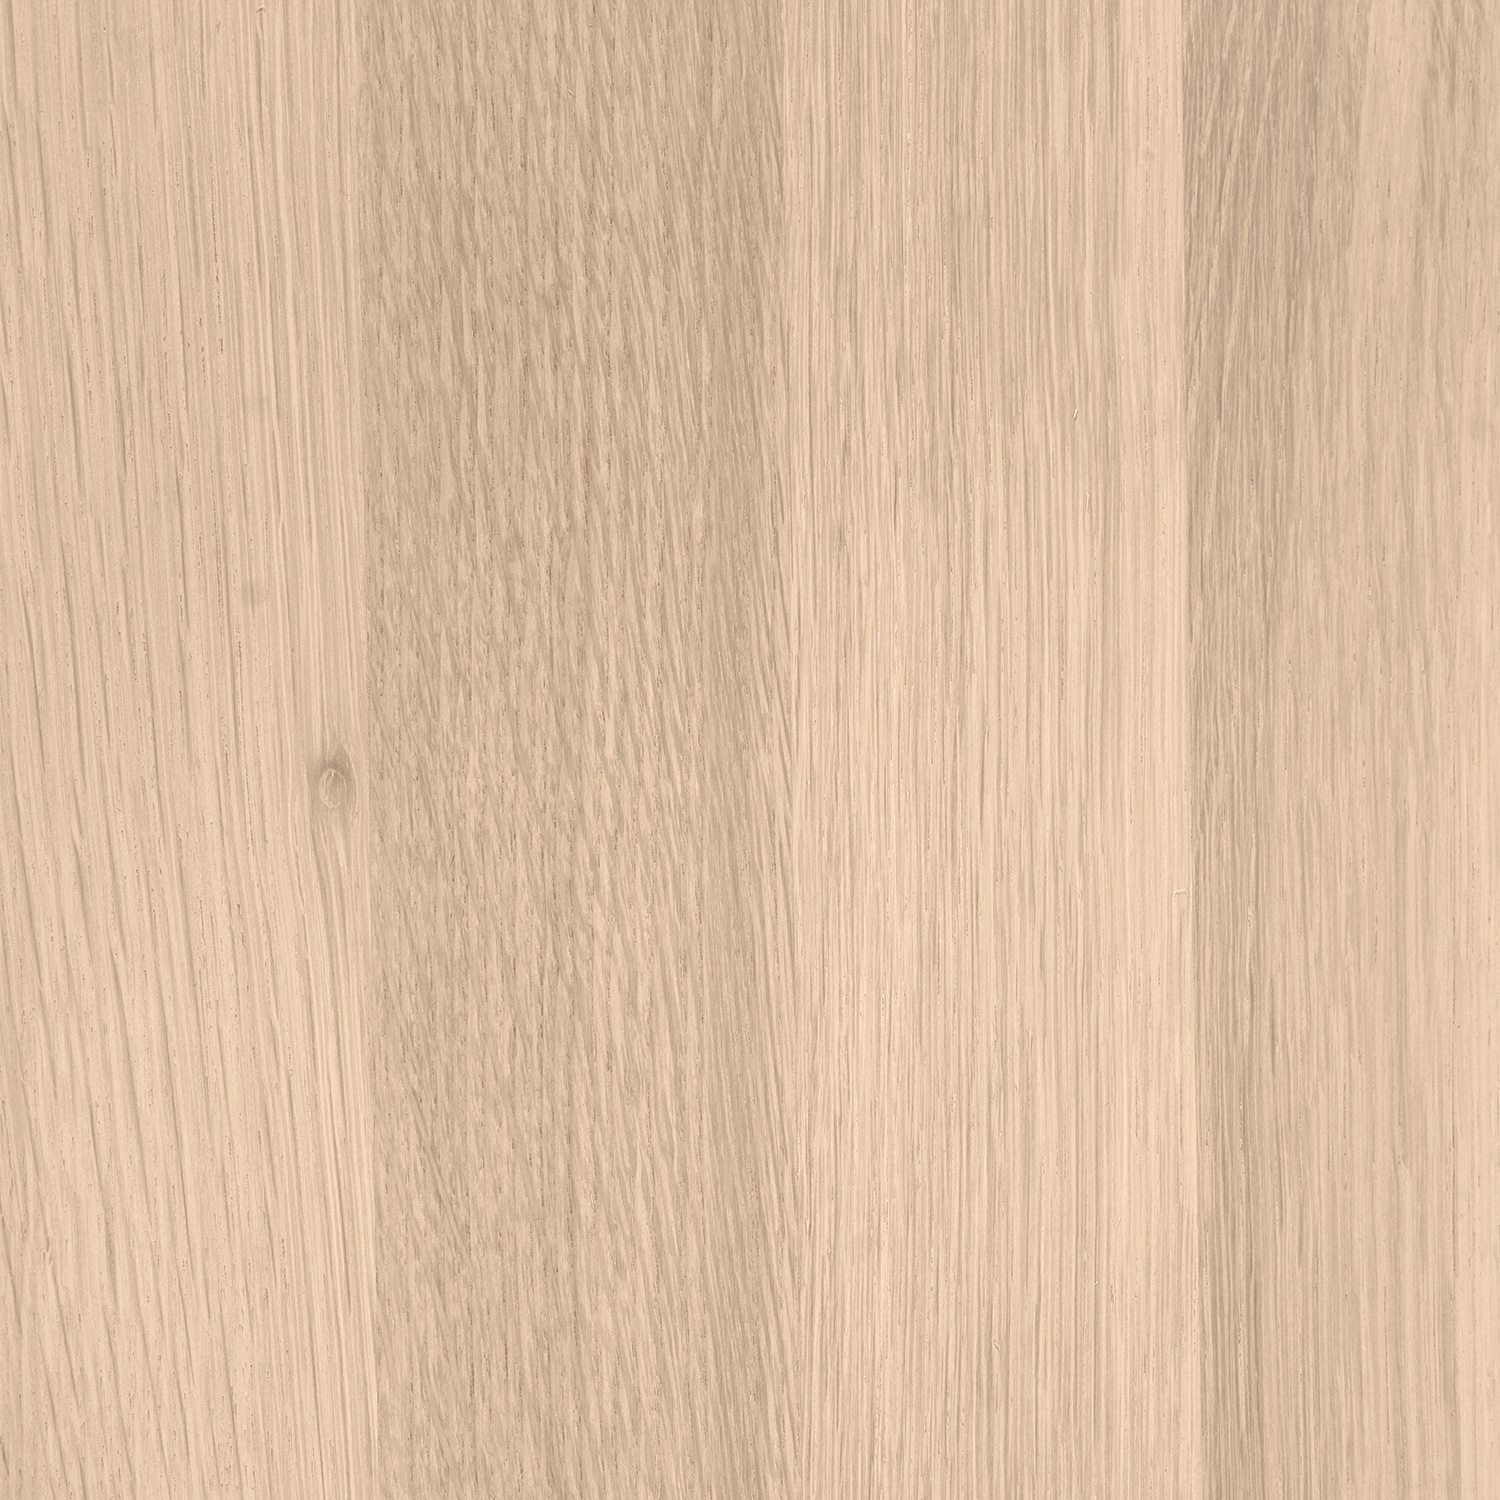  Leimholzplatte Eiche nach Maß - 4 cm dick (2-lagig) - Eichenholz A-Qualität- Eiche Massivholzplatte - verleimt & künstlich getrocknet (HF 8-12%) - 15-120x20-300 cm